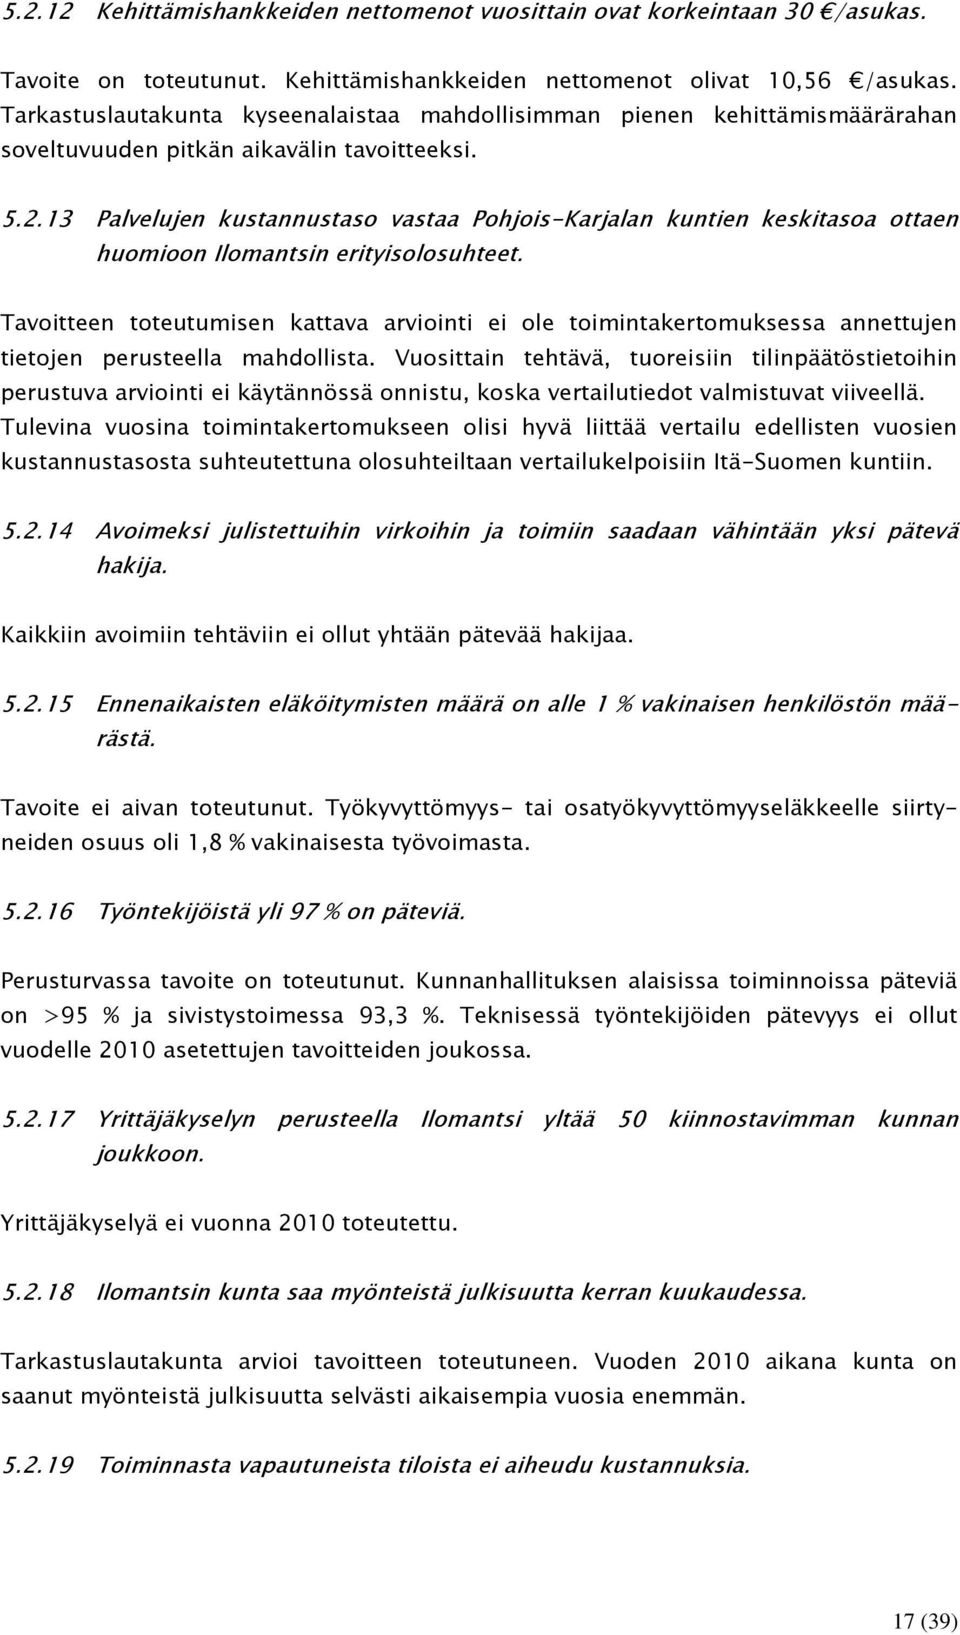 13 Palvelujen kustannustaso vastaa Pohjois-Karjalan kuntien keskitasoa ottaen huomioon Ilomantsin erityisolosuhteet.